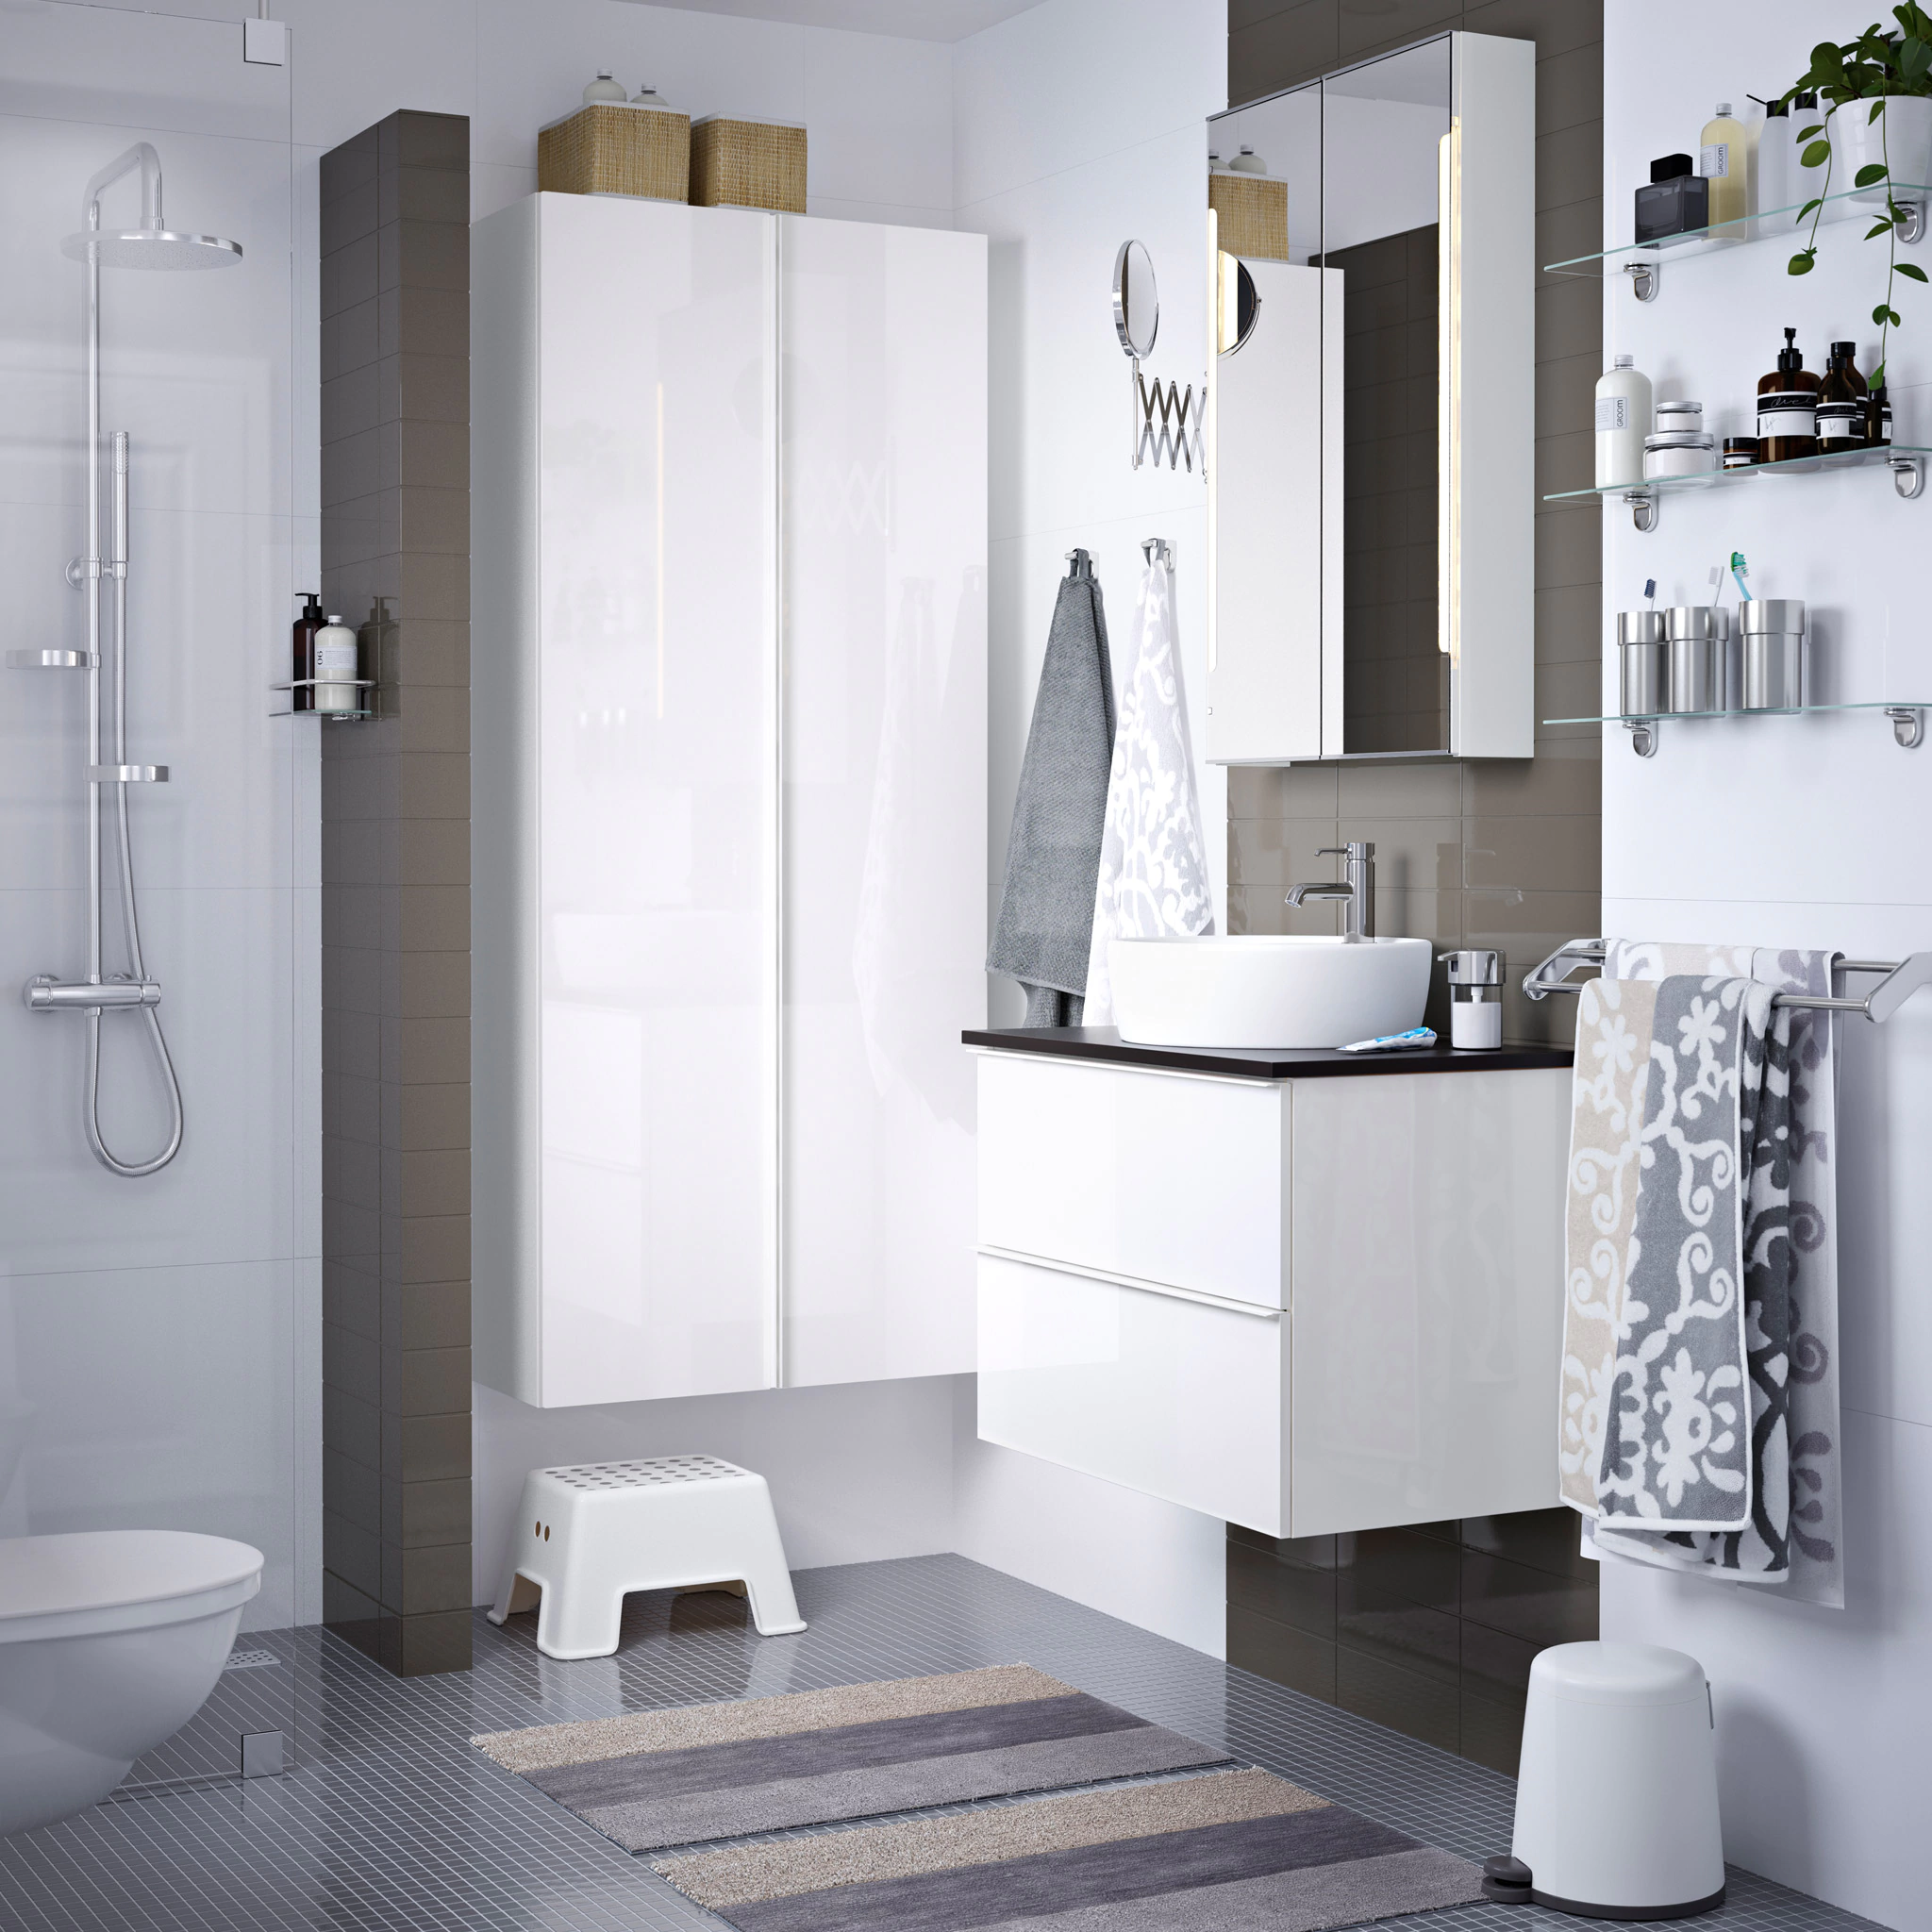 Das moderne Badezimmer mit IKEA Badmäbeln